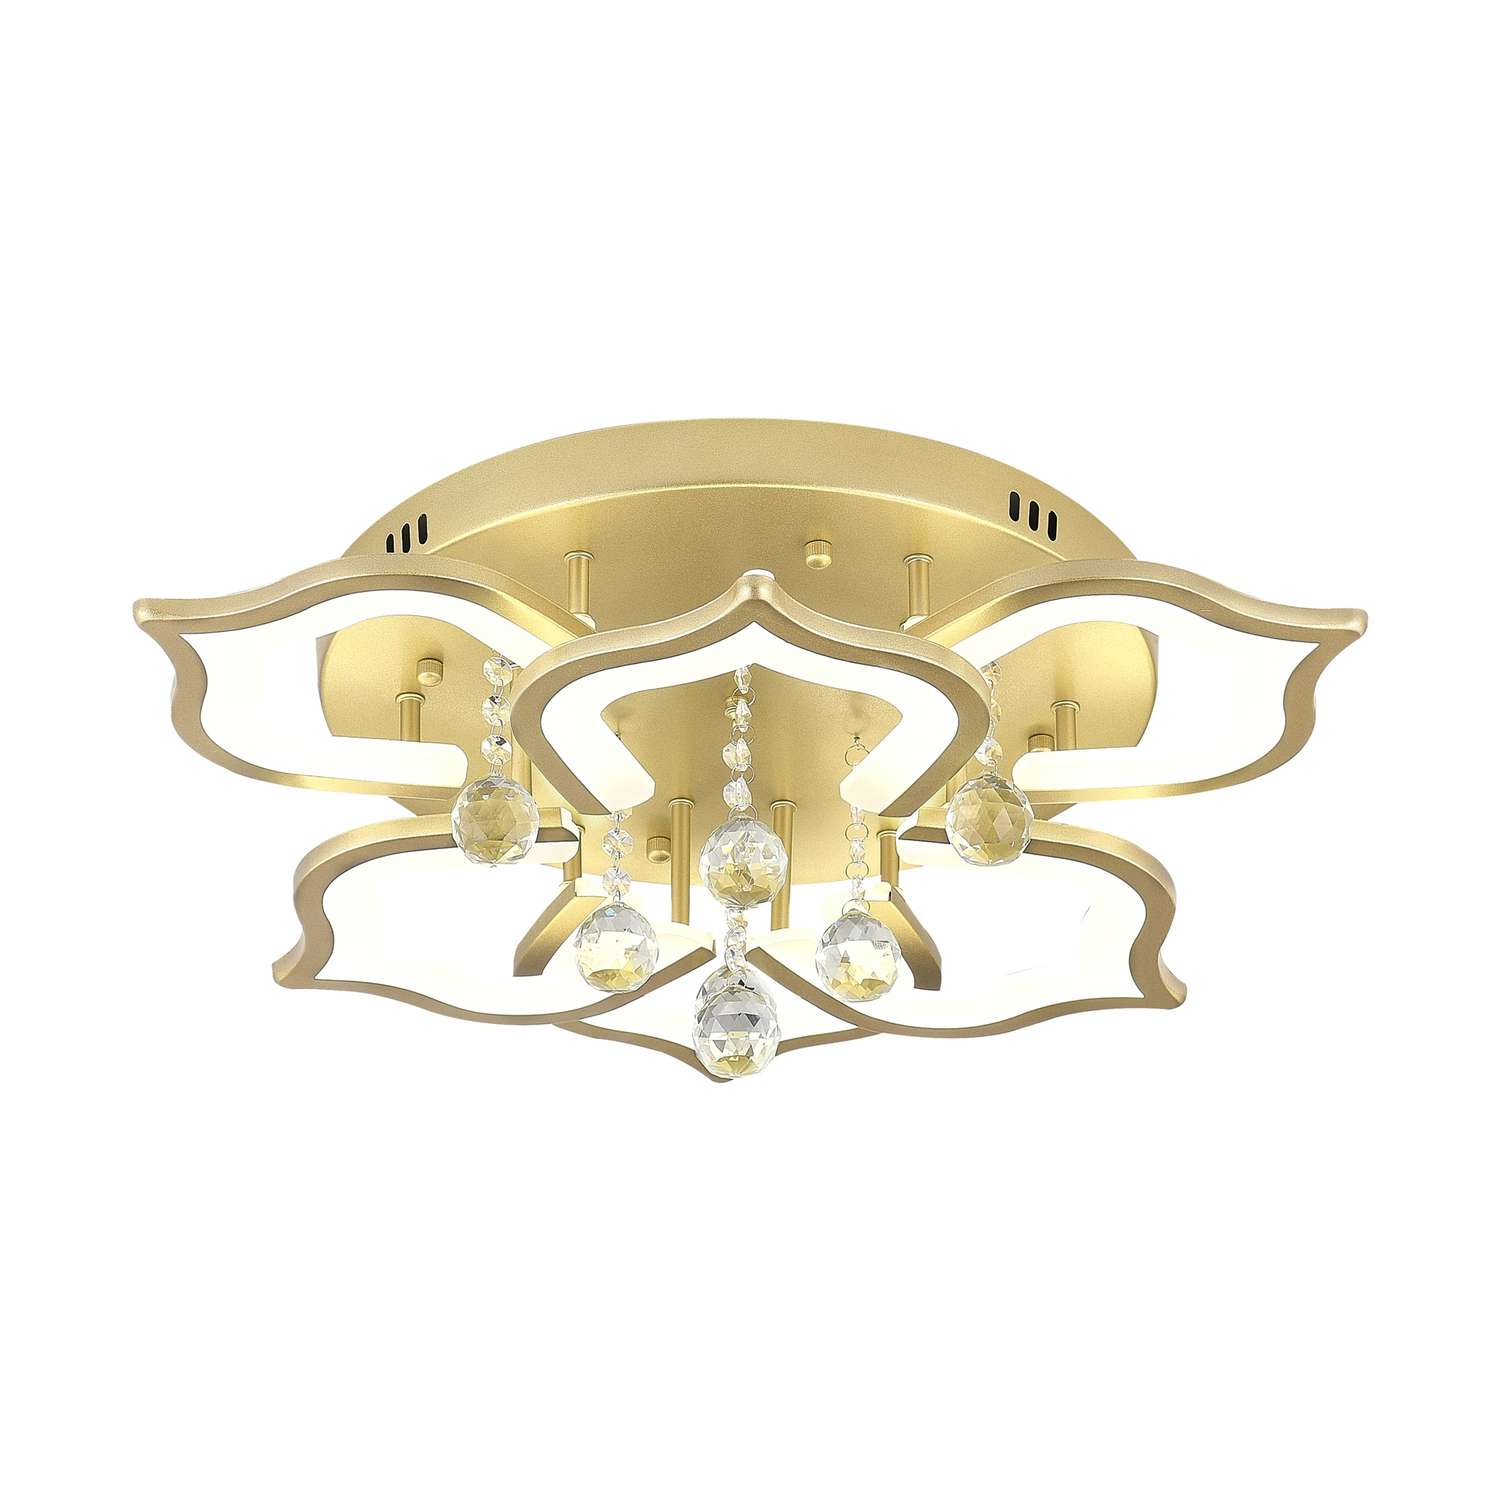 Светодиодный светильник NATALI KOVALTSEVA люстра 100W золотой LED - фото 7